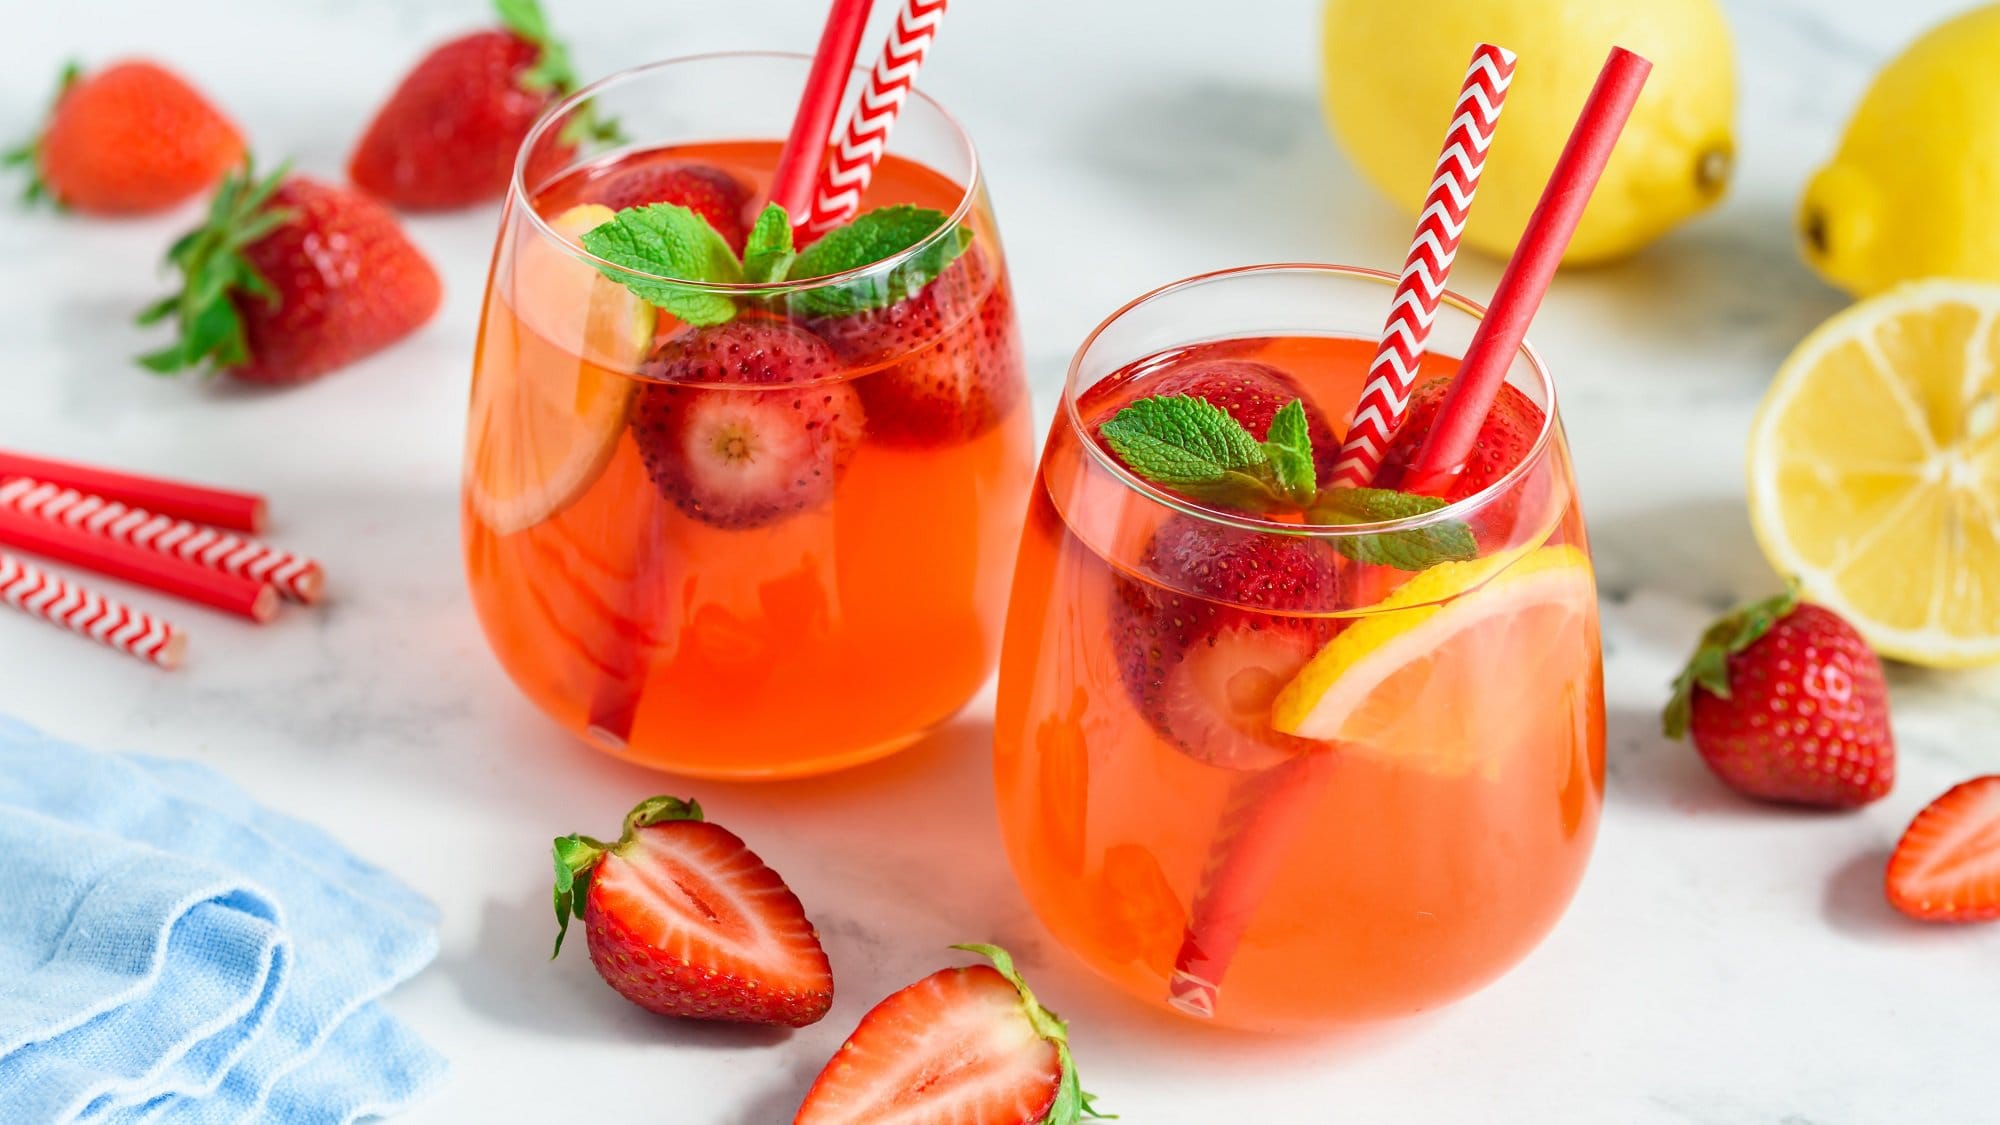 Schräge Draufsicht: Zwei Gläser mir einem erfrischenden Drink mit Erdbeeren und Zitronen stehen auf einem hellen Untergrund. Dahinter liegen drei Zitronen sowie einige Erdbeeren.